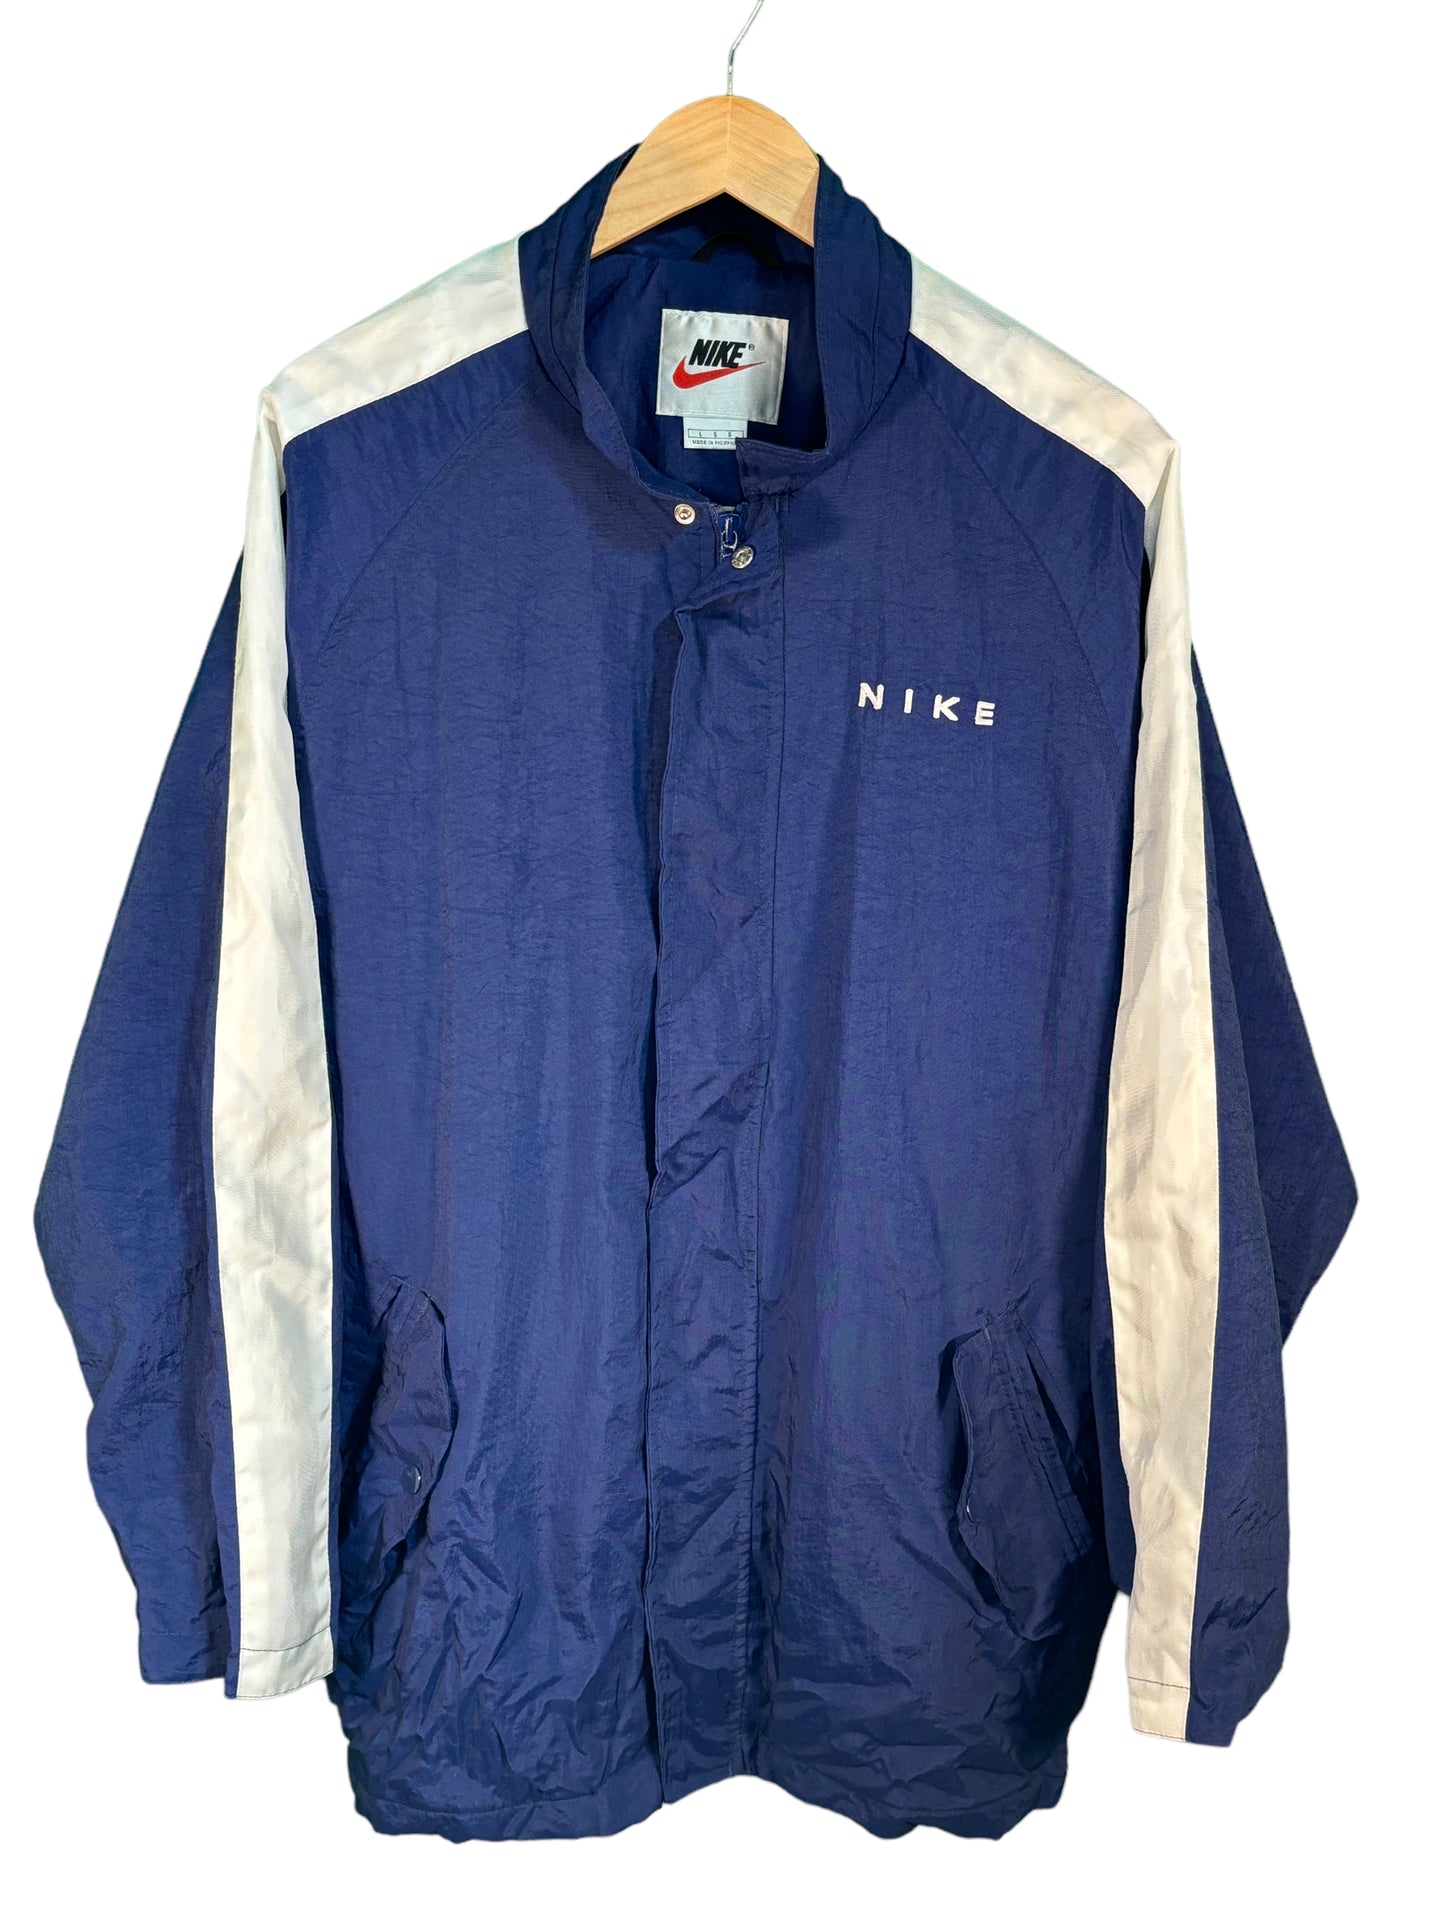 Vintage 90's Nike Navy Blue Big Swoosh Windbreaker Jacket Size Large